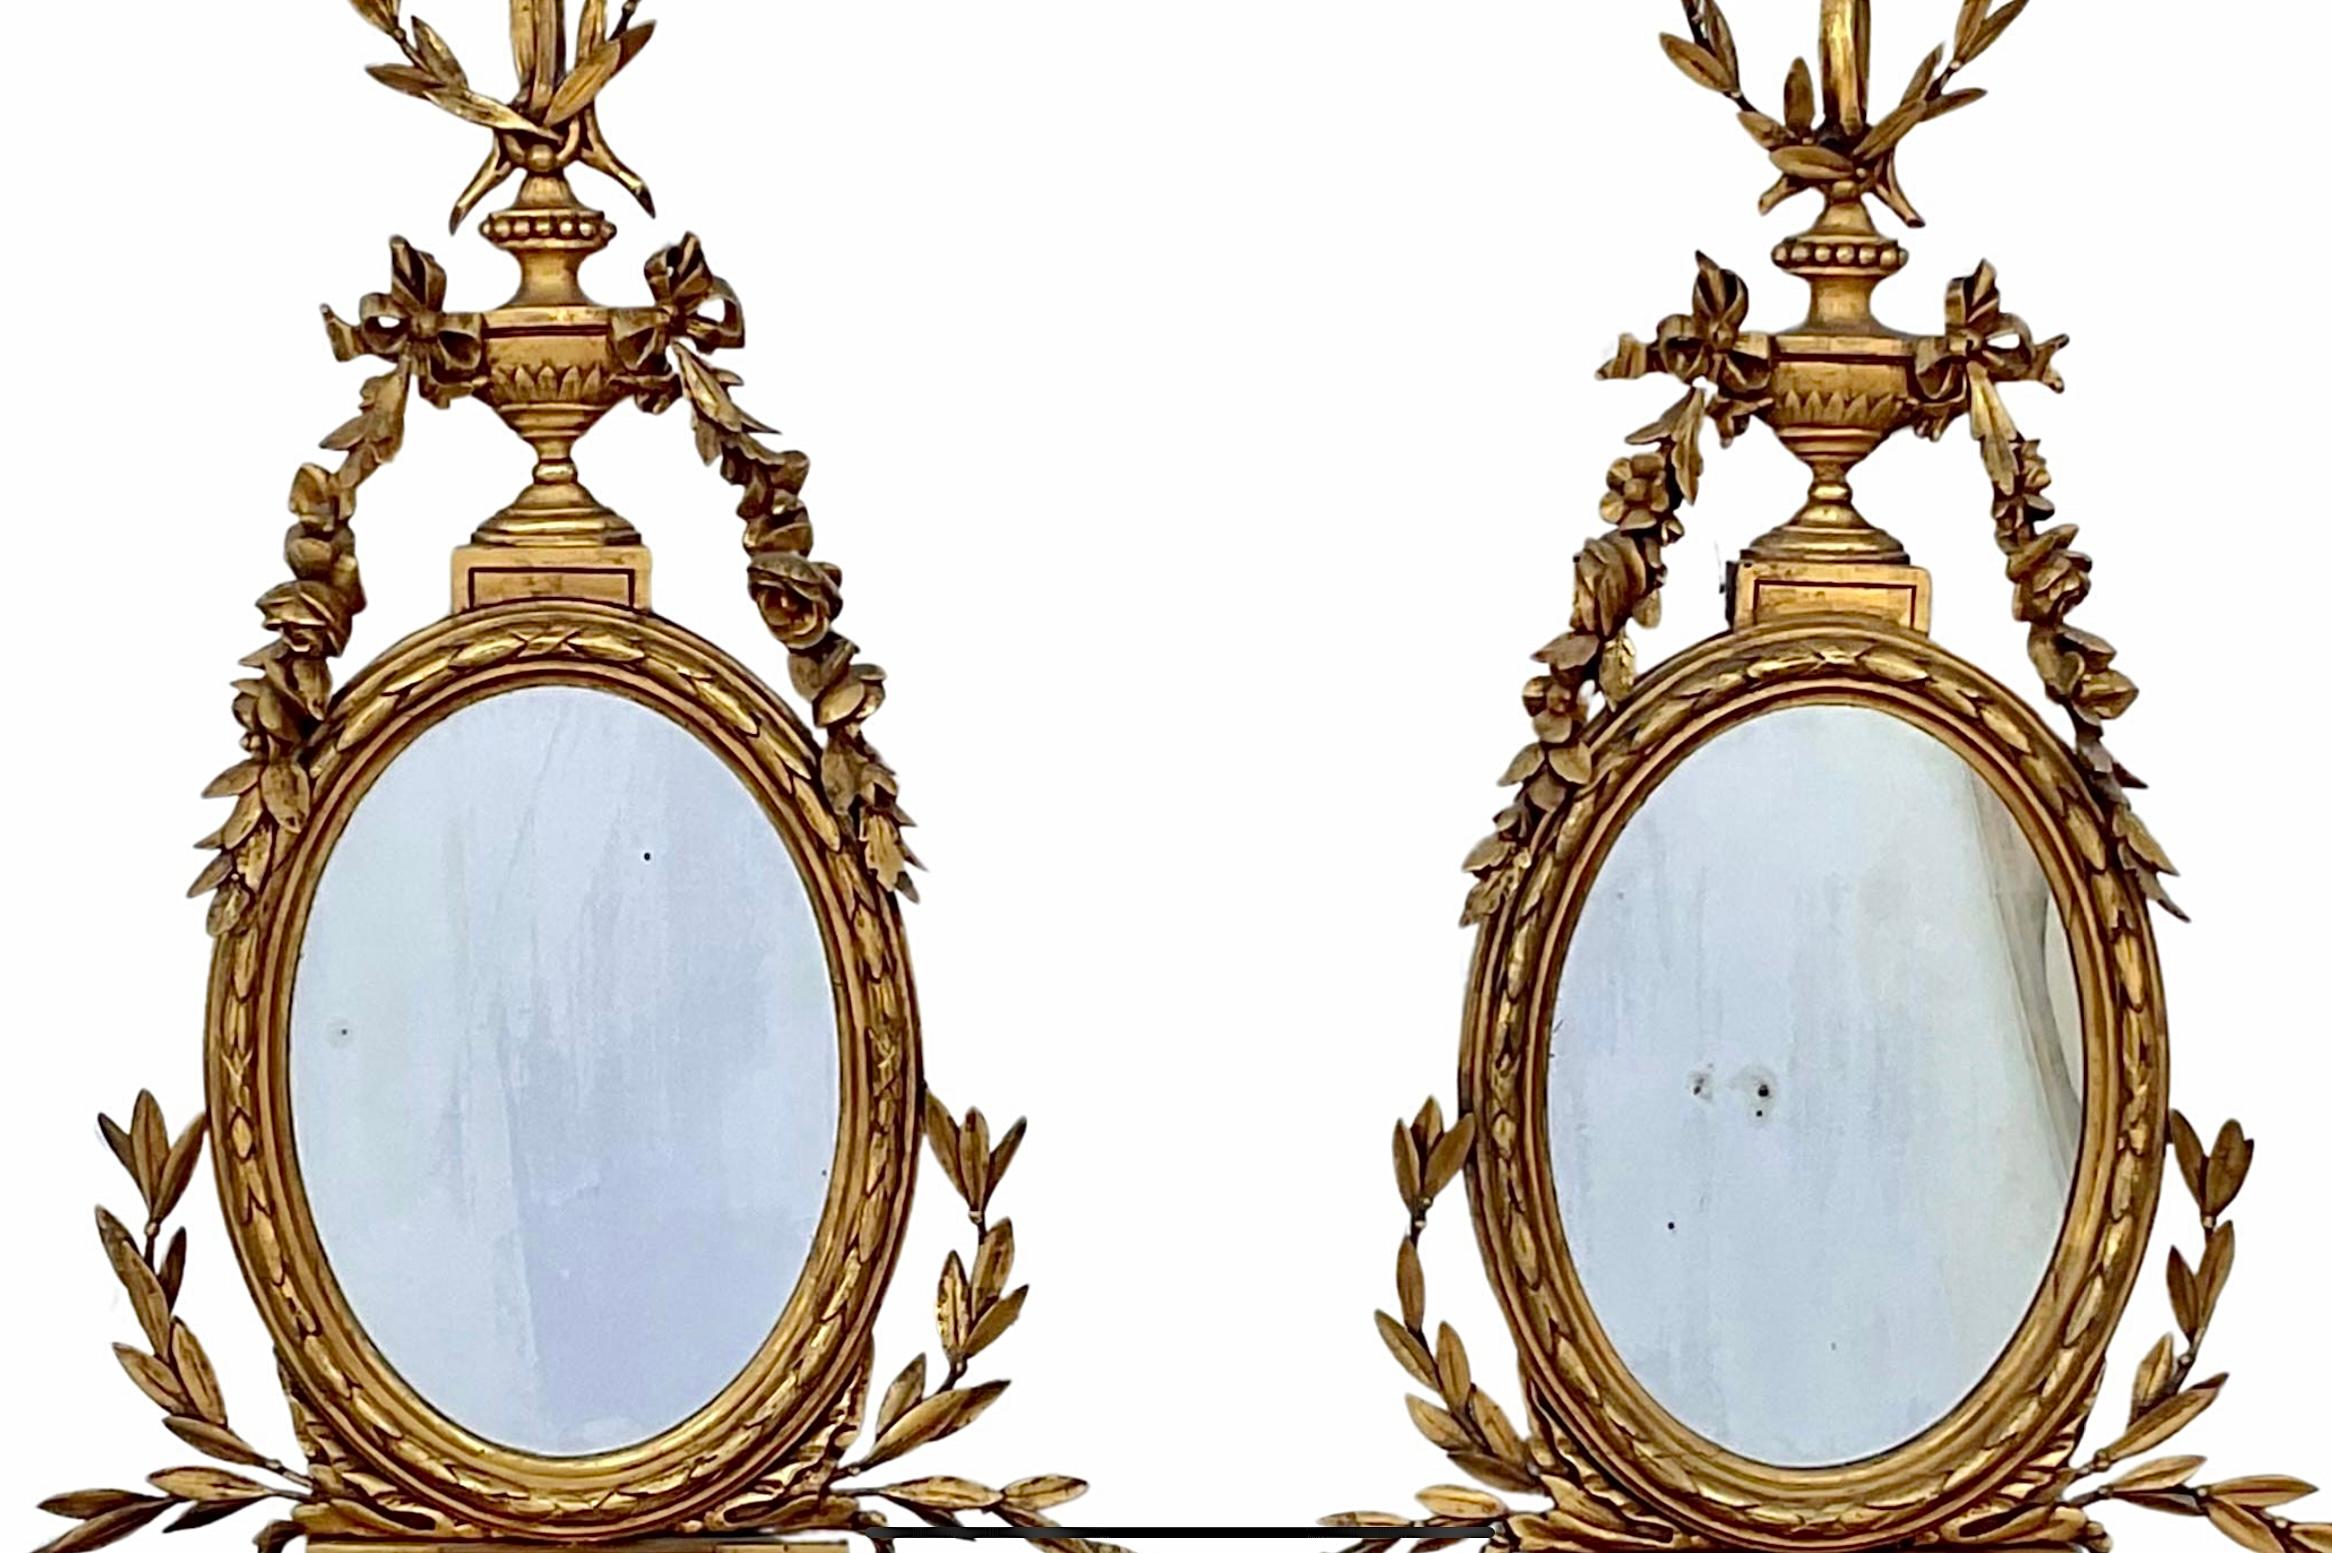 Paar Wandhalterungen aus Giltwood und Girandole im Stil von George III. aus dem 19. Ein goldenes Band und eine goldene Schleife über einer geschnitzten Urne mit Goldfolie, die bis zu einem ovalen Spiegel über einem urnenförmigen Wandregal reicht.